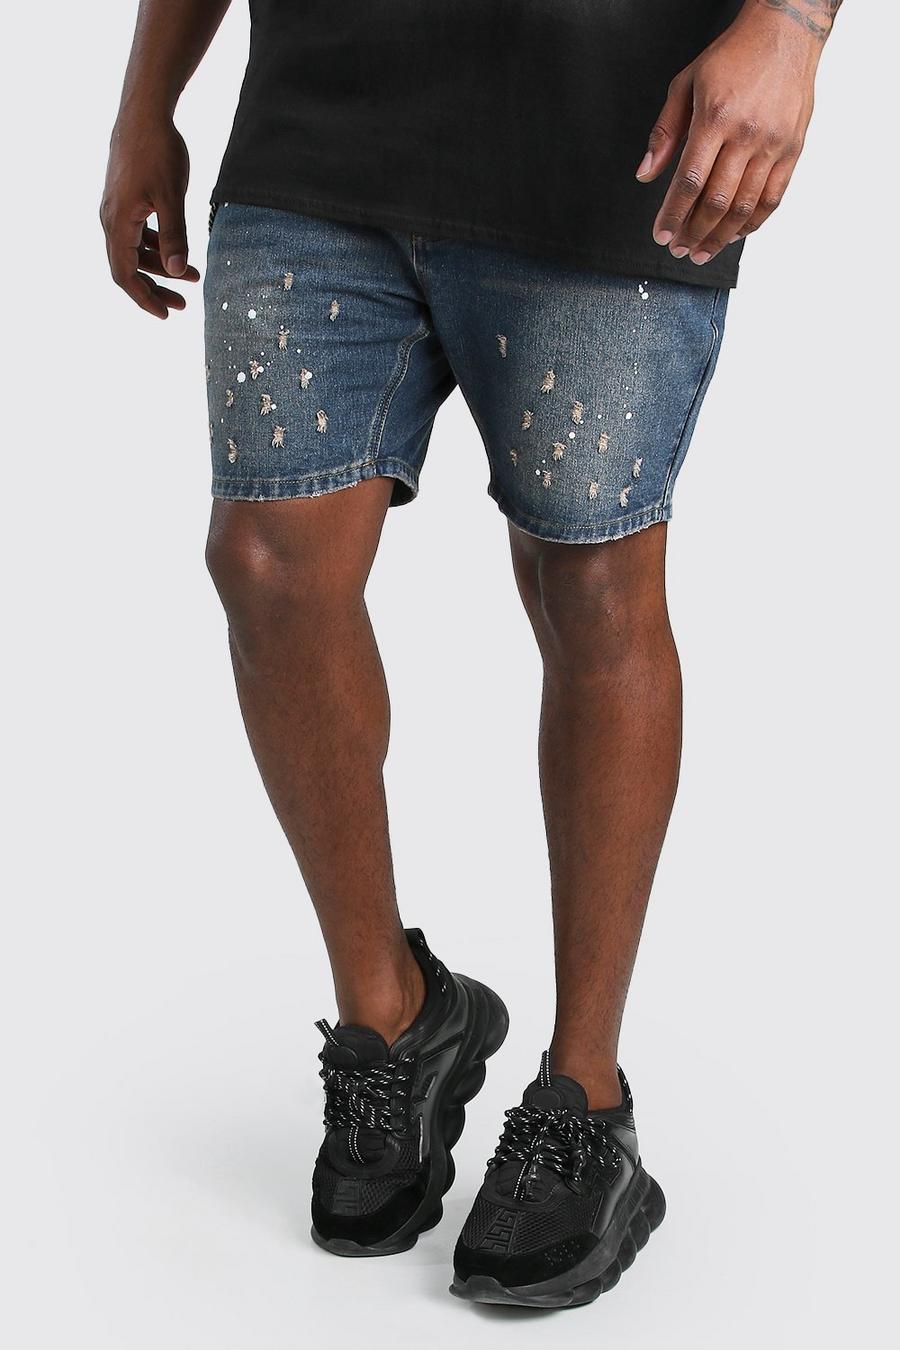 Pantalones cortos vaqueros con salpicaduras de pintura Slim Fit talla Plus, Lavado oscuro image number 1